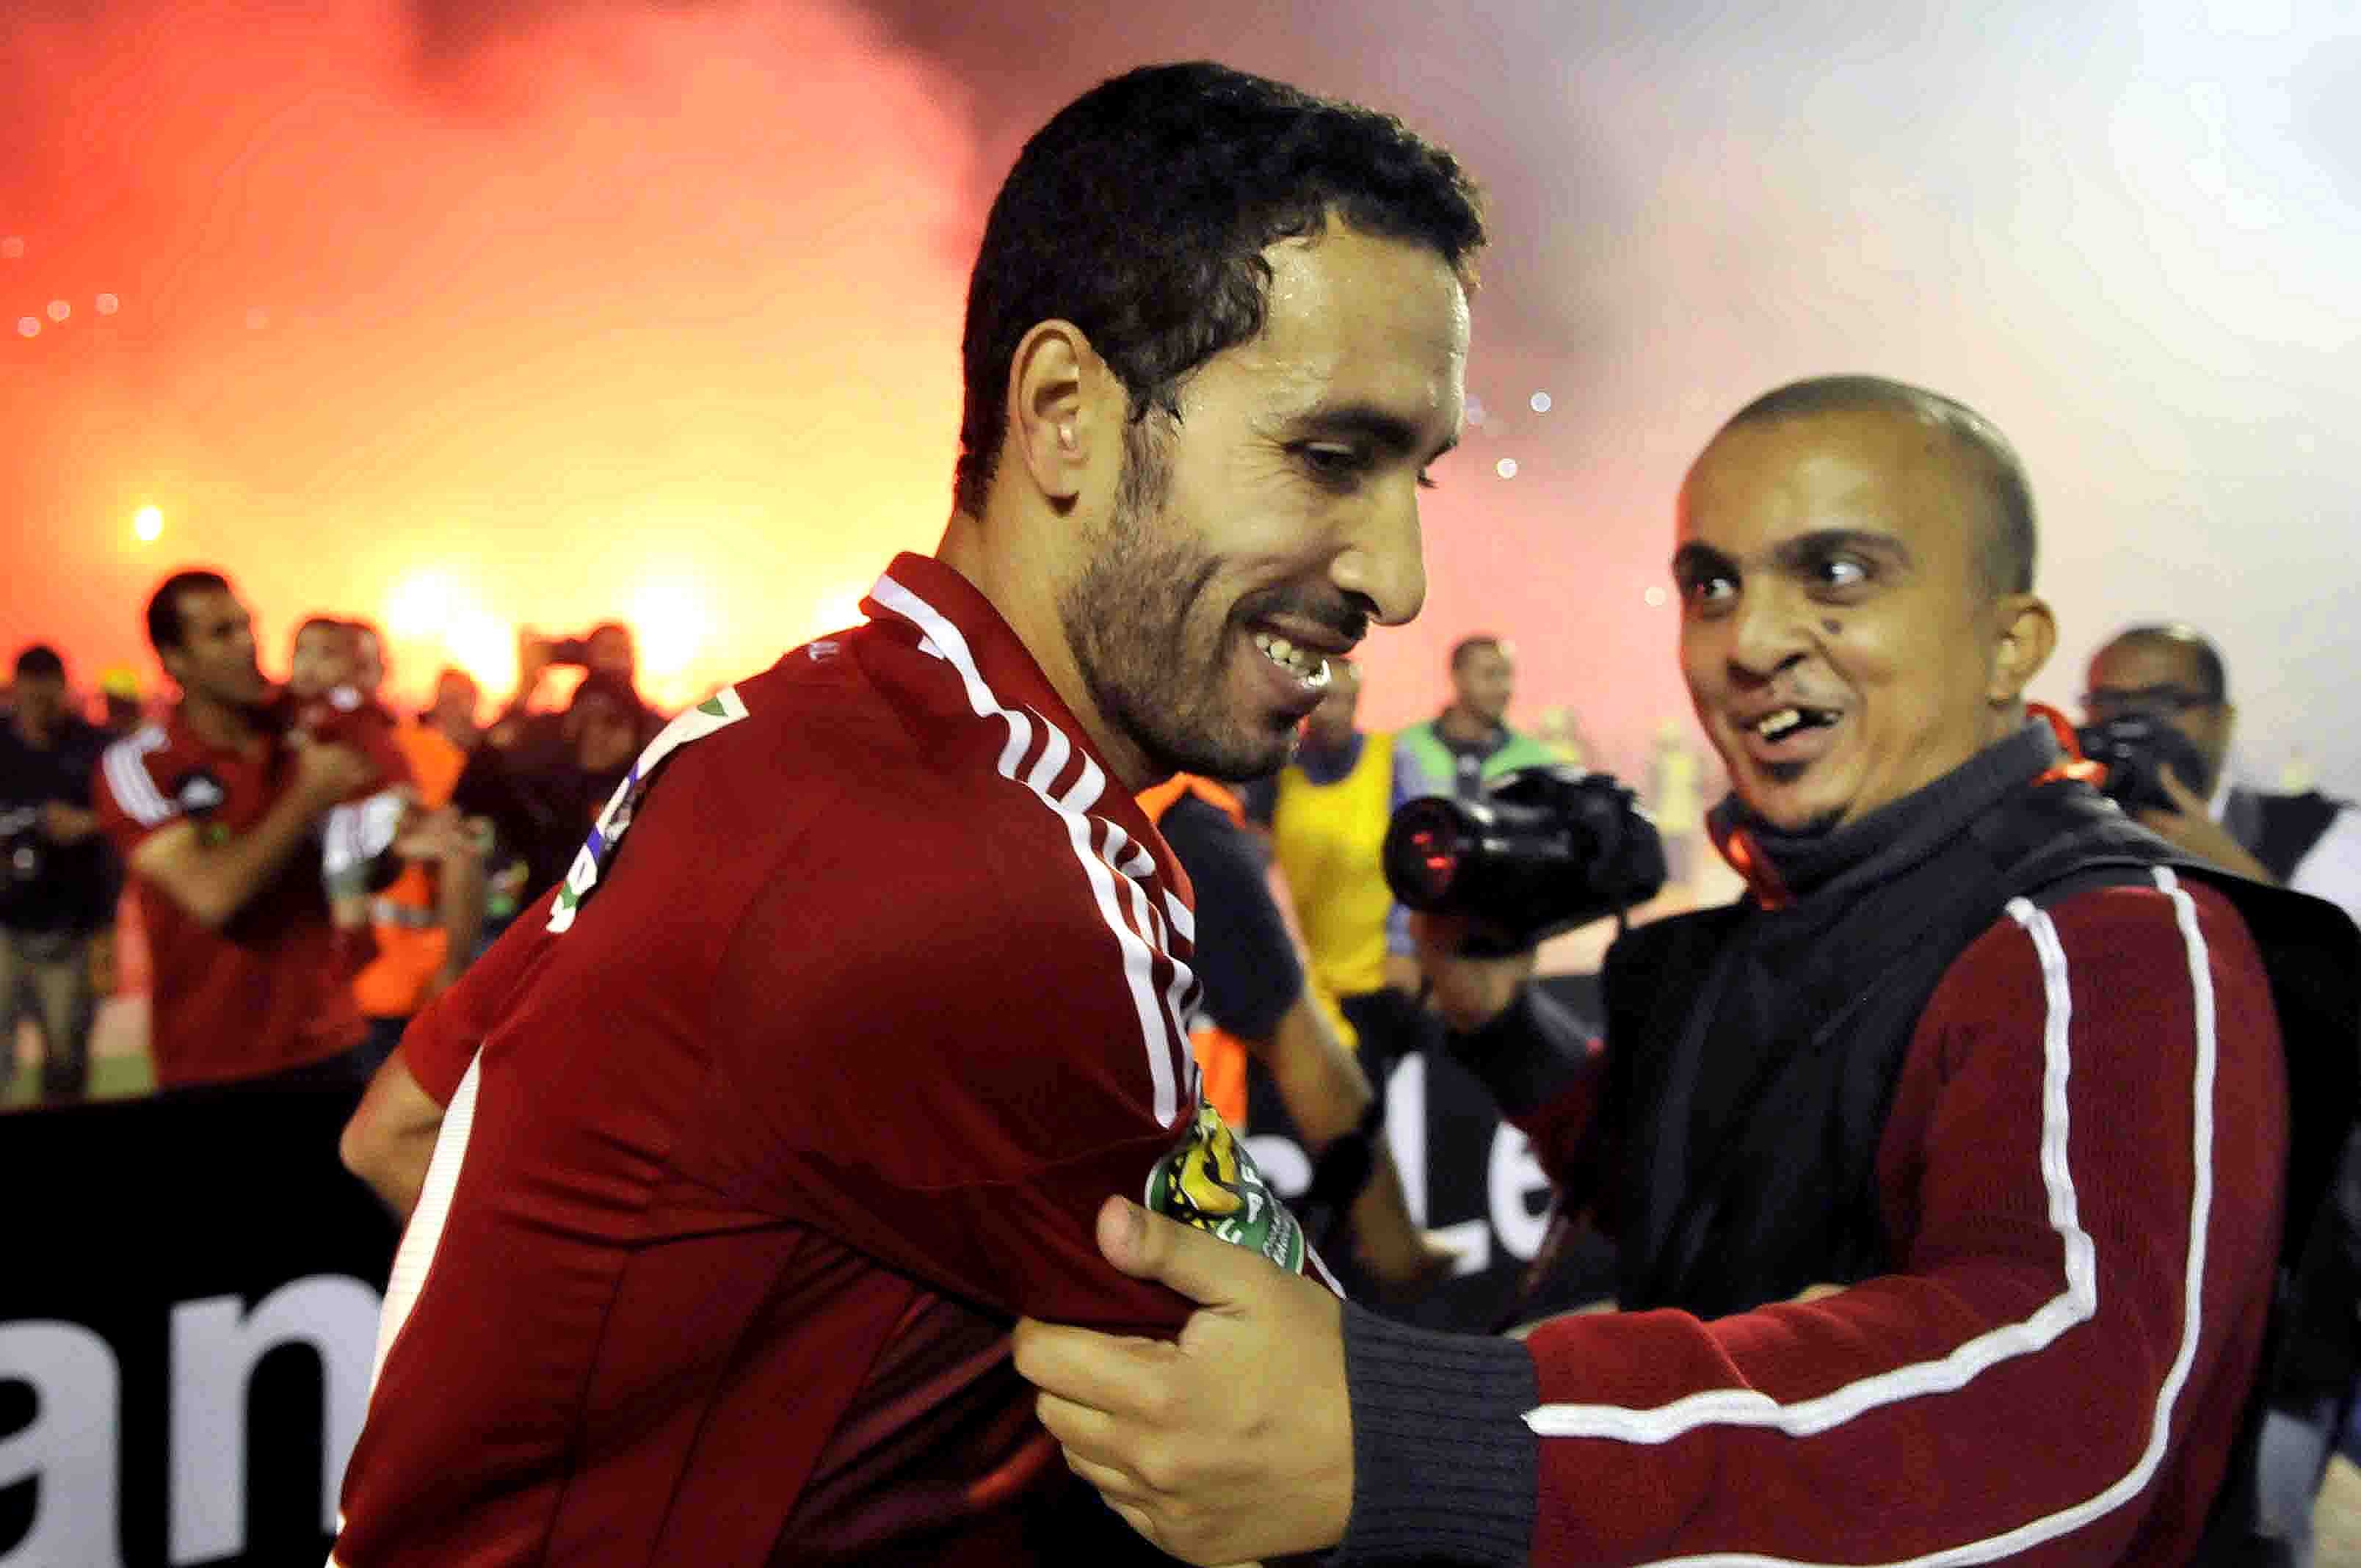 Captain, Fussballheld, Integrationsfigur: Mohamed Aboutreika trug die Nummer 22 auf dem Rücken.